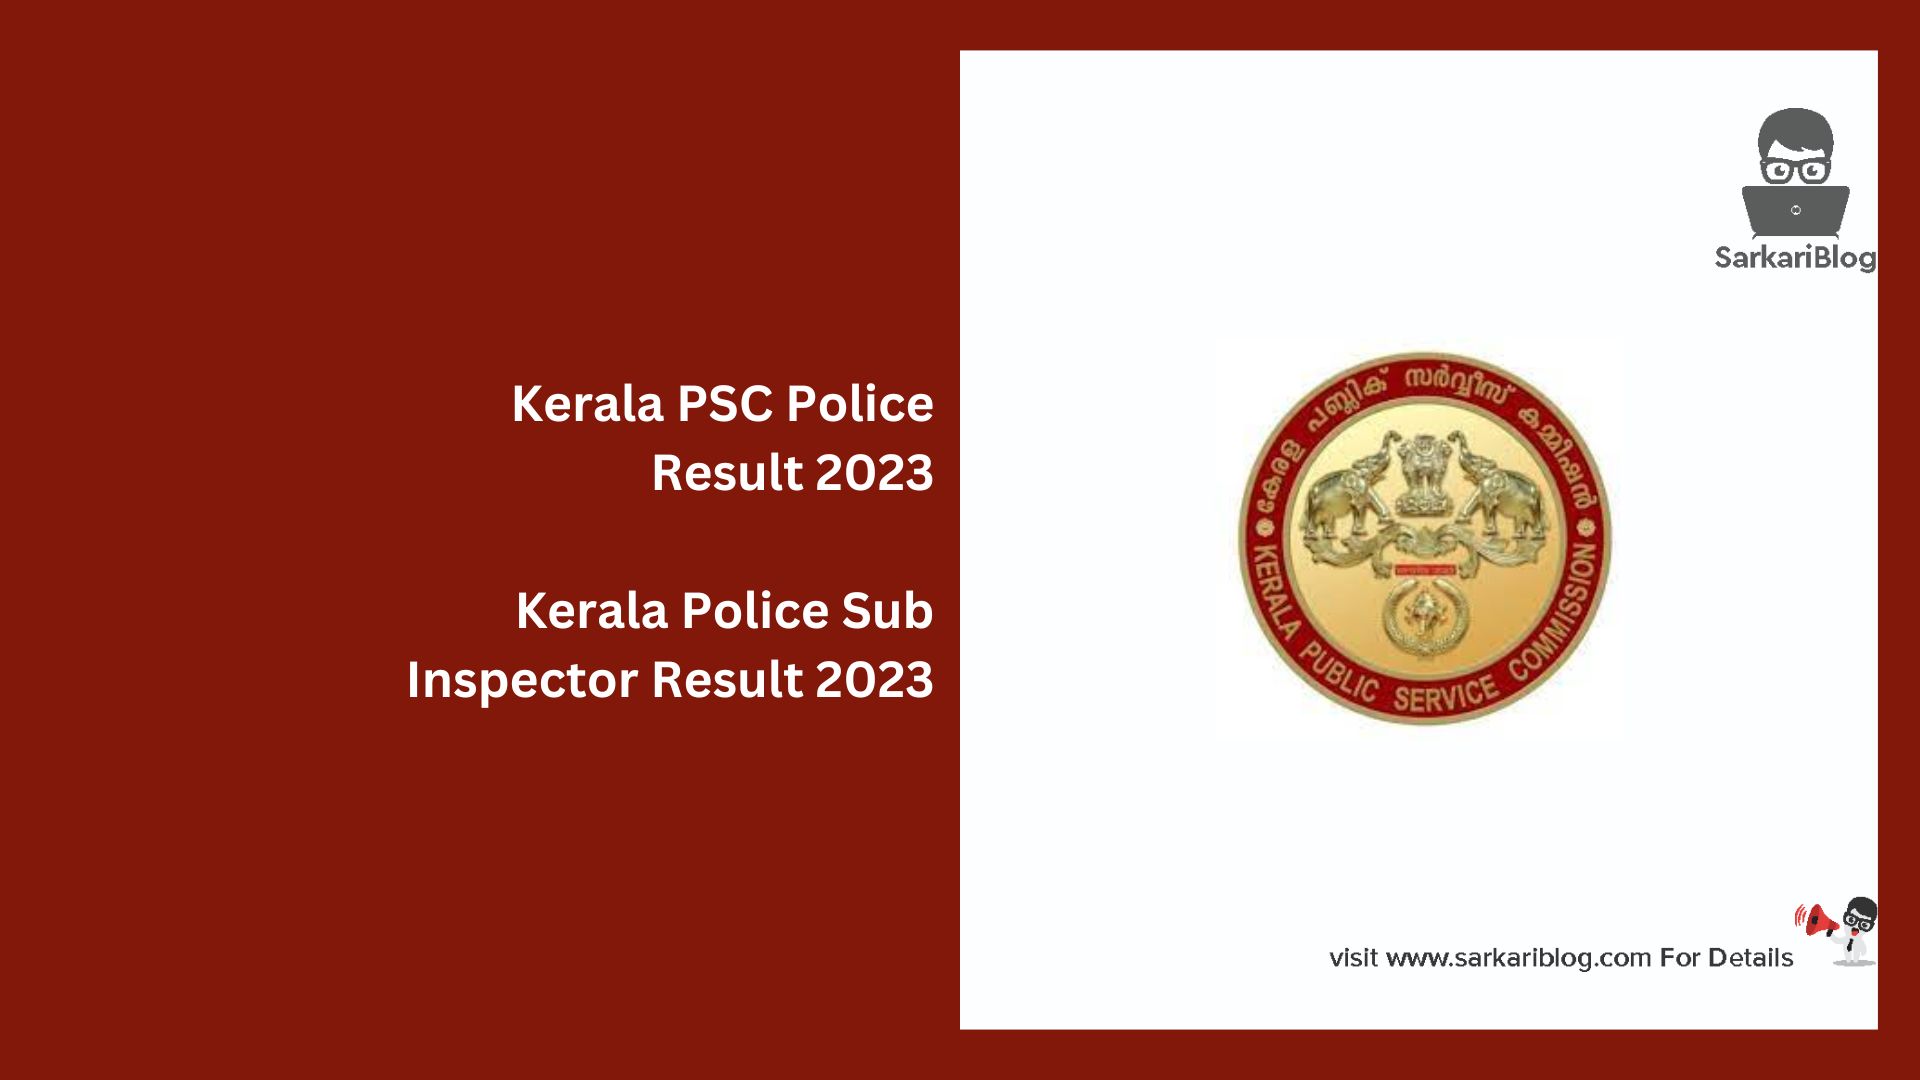 Kerala PSC Police Result 2023